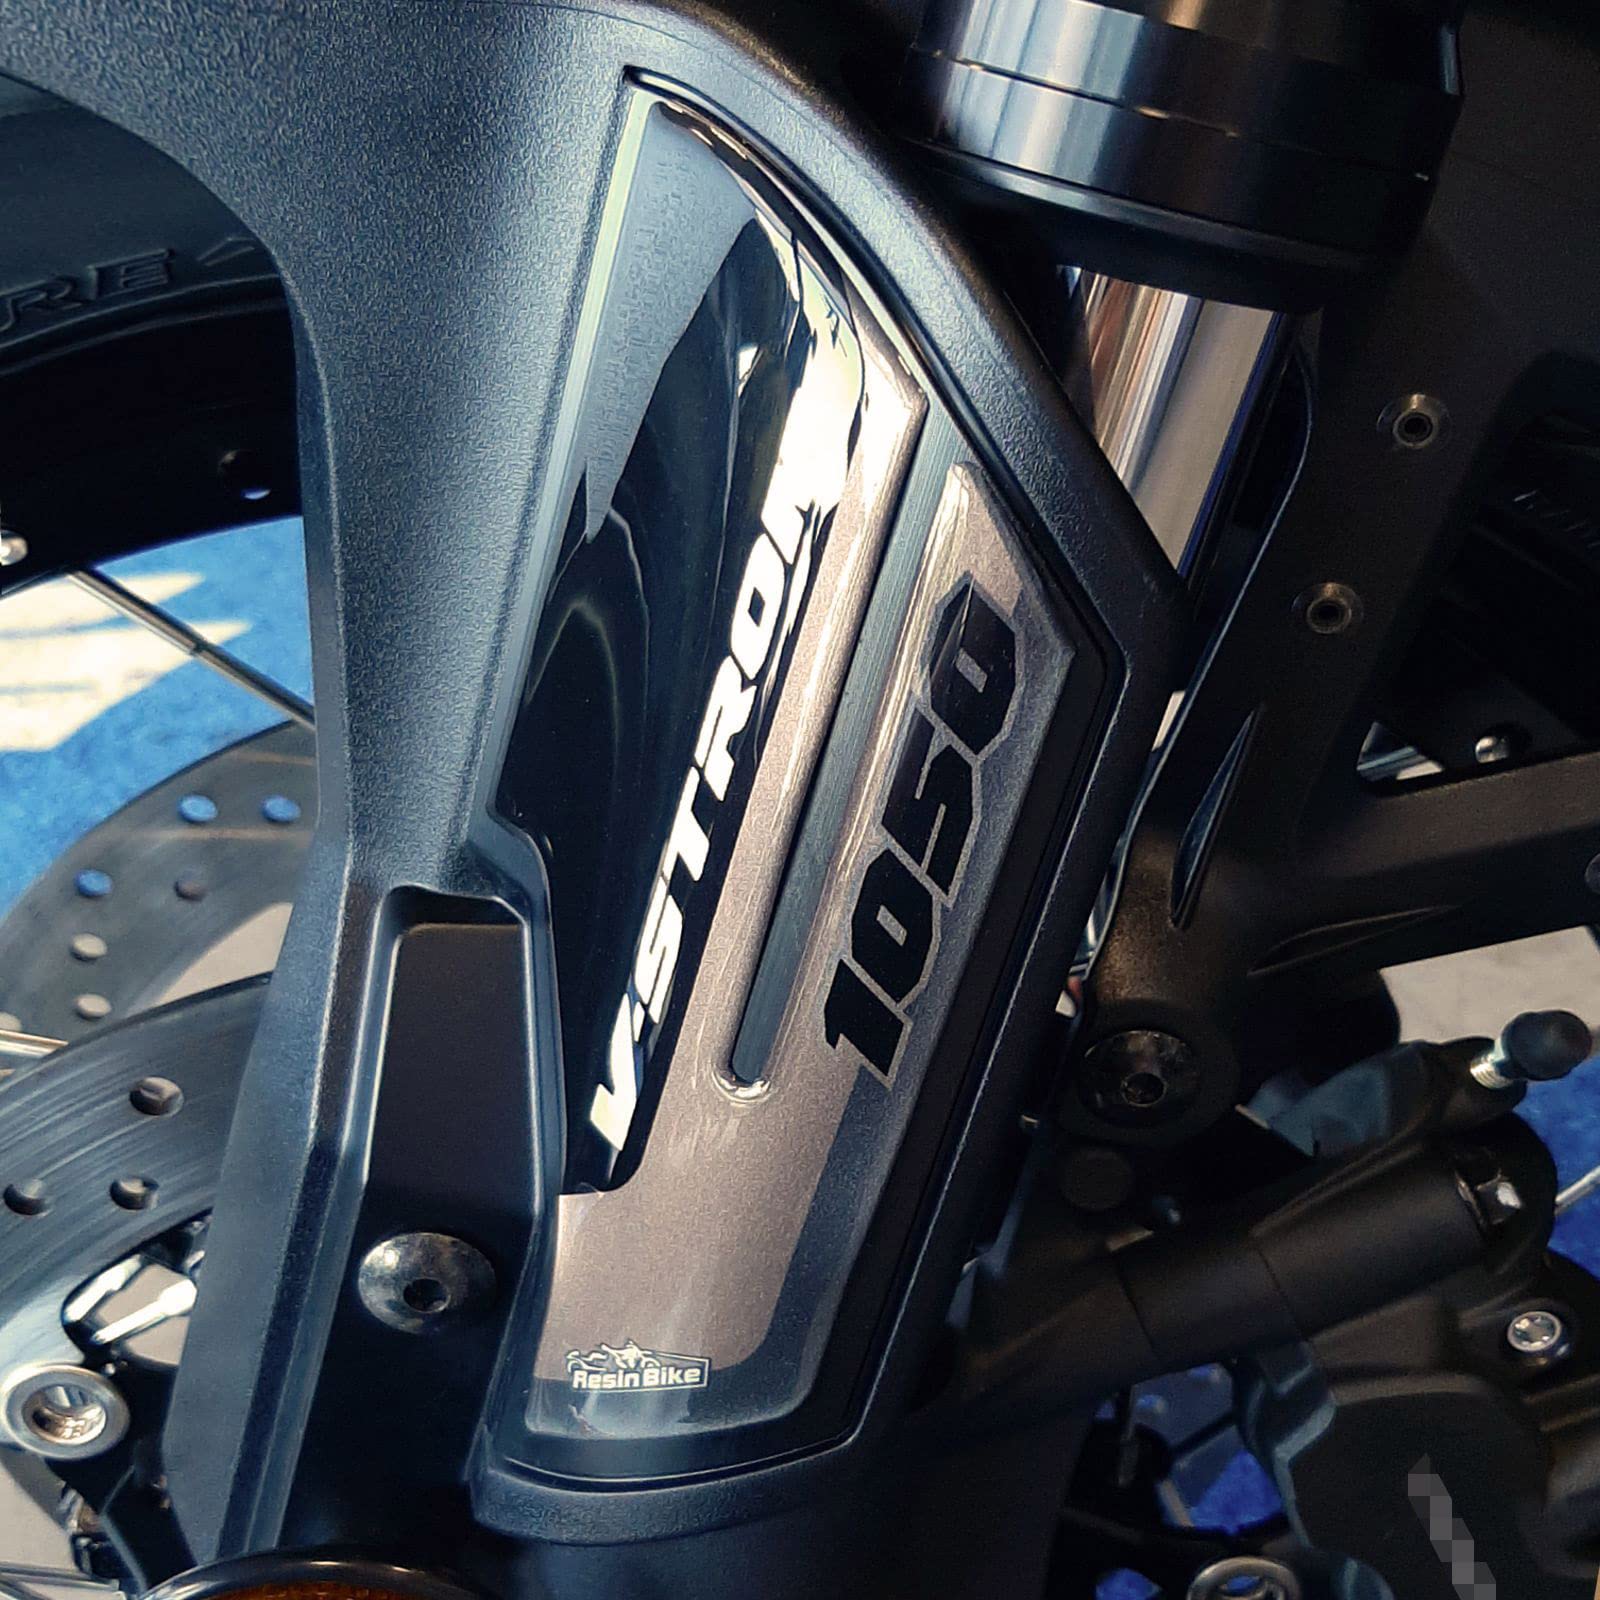 Resin Bike Aufkleber für Motorrad Kompatibel mit Suzuki V-Strom 1050 XT 2020 Schwarz Metal. Kotflügelschutz vor Stößen und Kratzern. Paar 3D-Harzklebstoff – Stickers - Made in Italy von Resin Bike